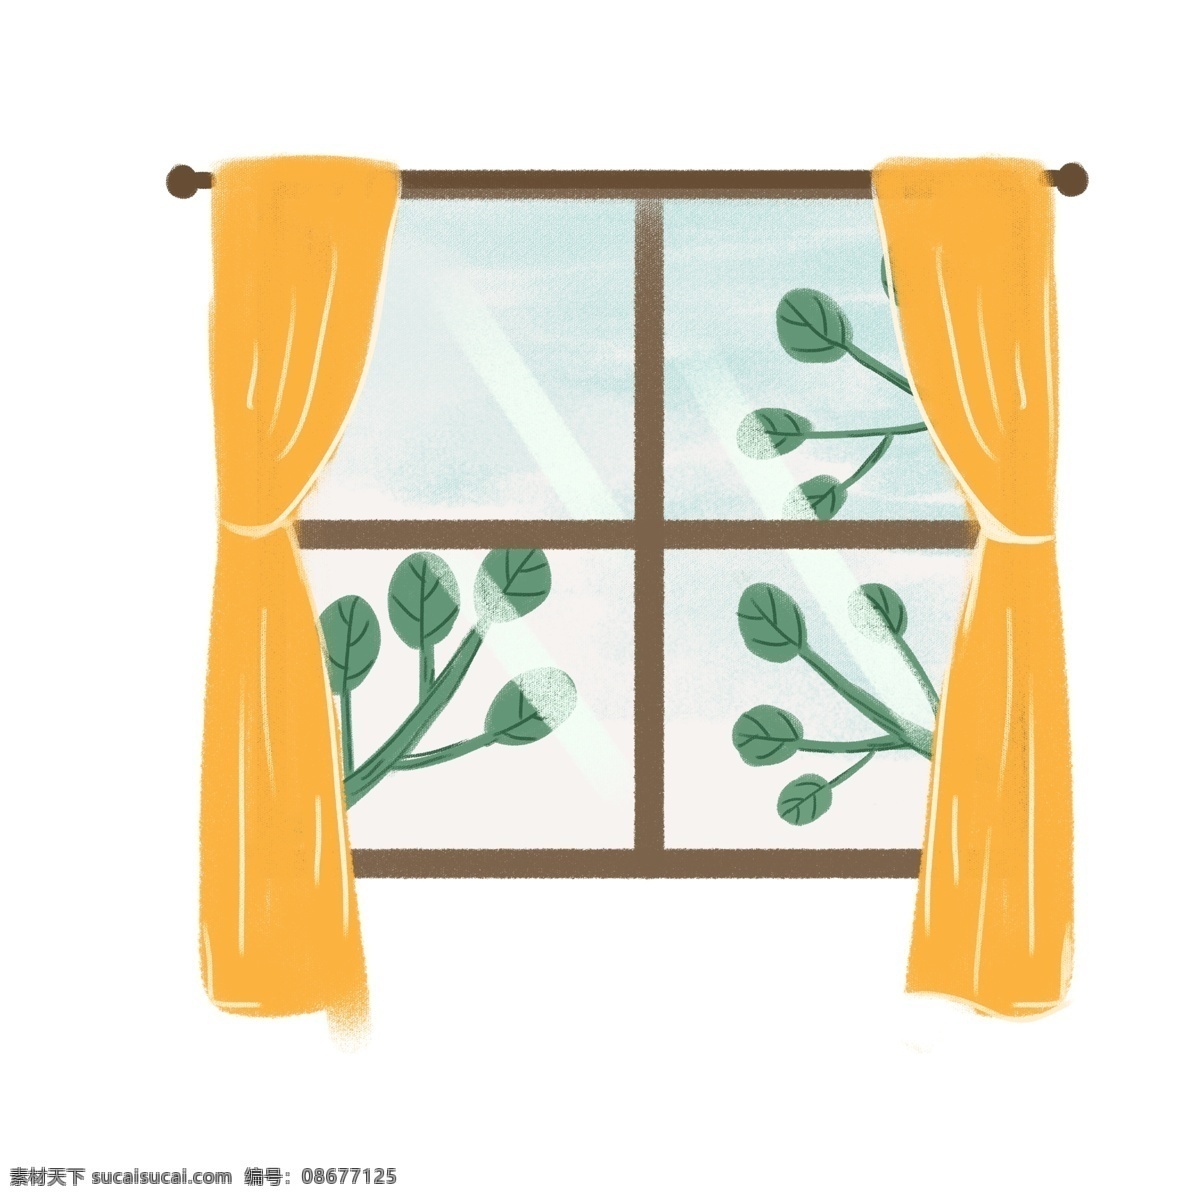 窗外 绿叶 图案 元素 树叶 夏天元素 窗帘 窗户 设计元素 元素设计 创意元素 手绘元素 psd元素 免抠元素